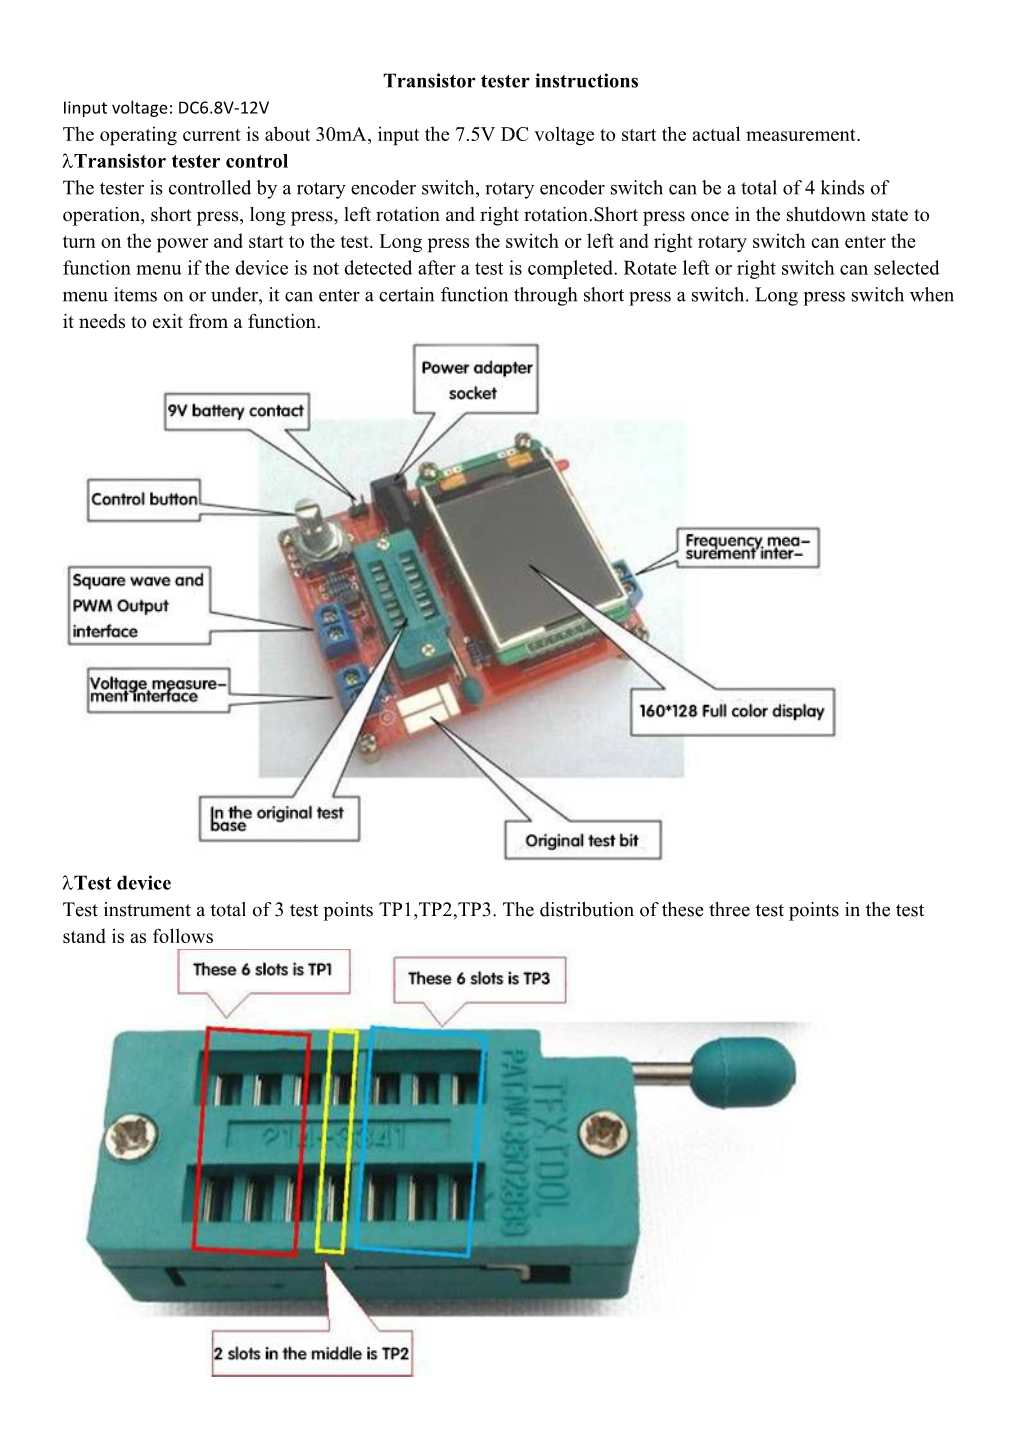 Transistor Tester Instructions